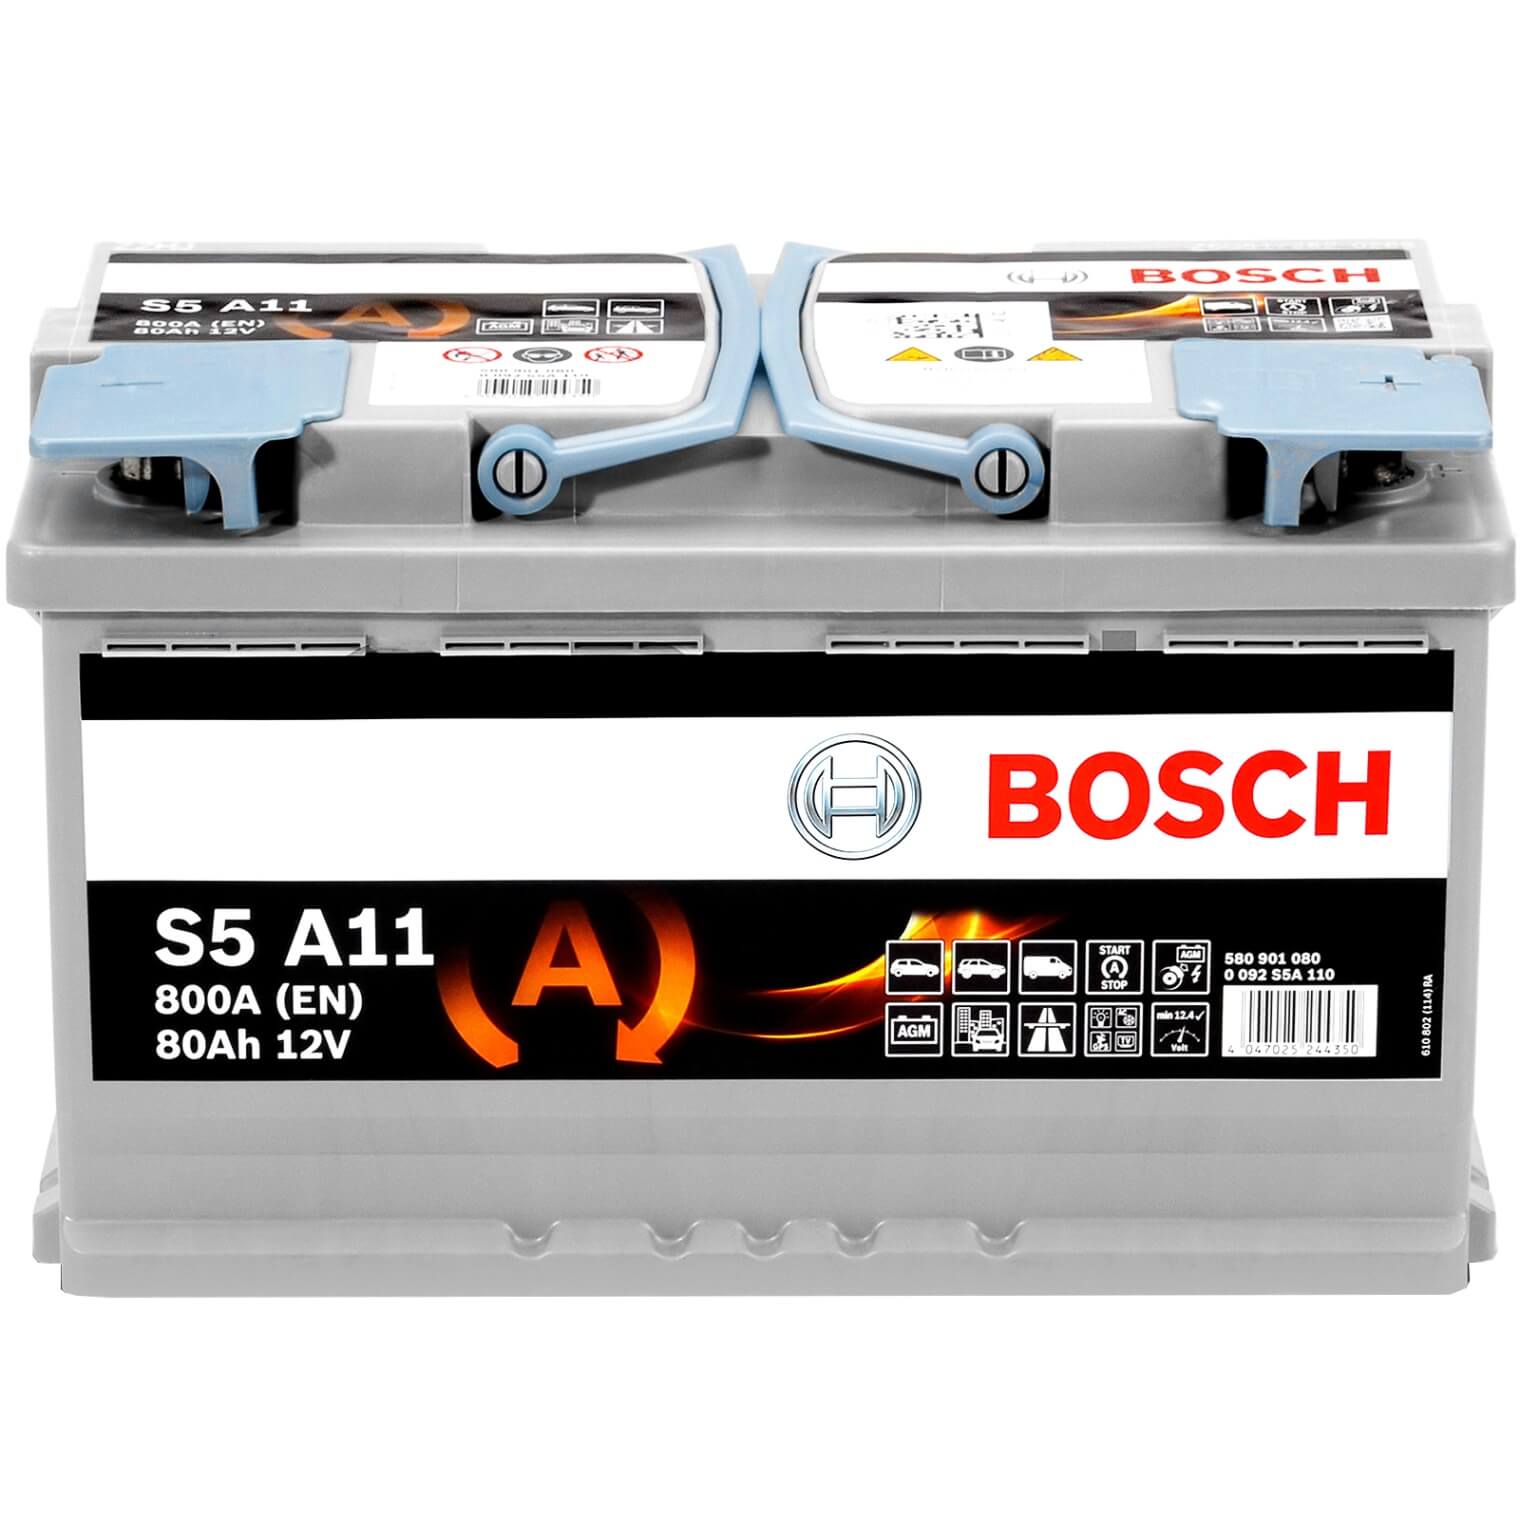 Bosch S5A11 AGM 12V 80Ah 800A/EN